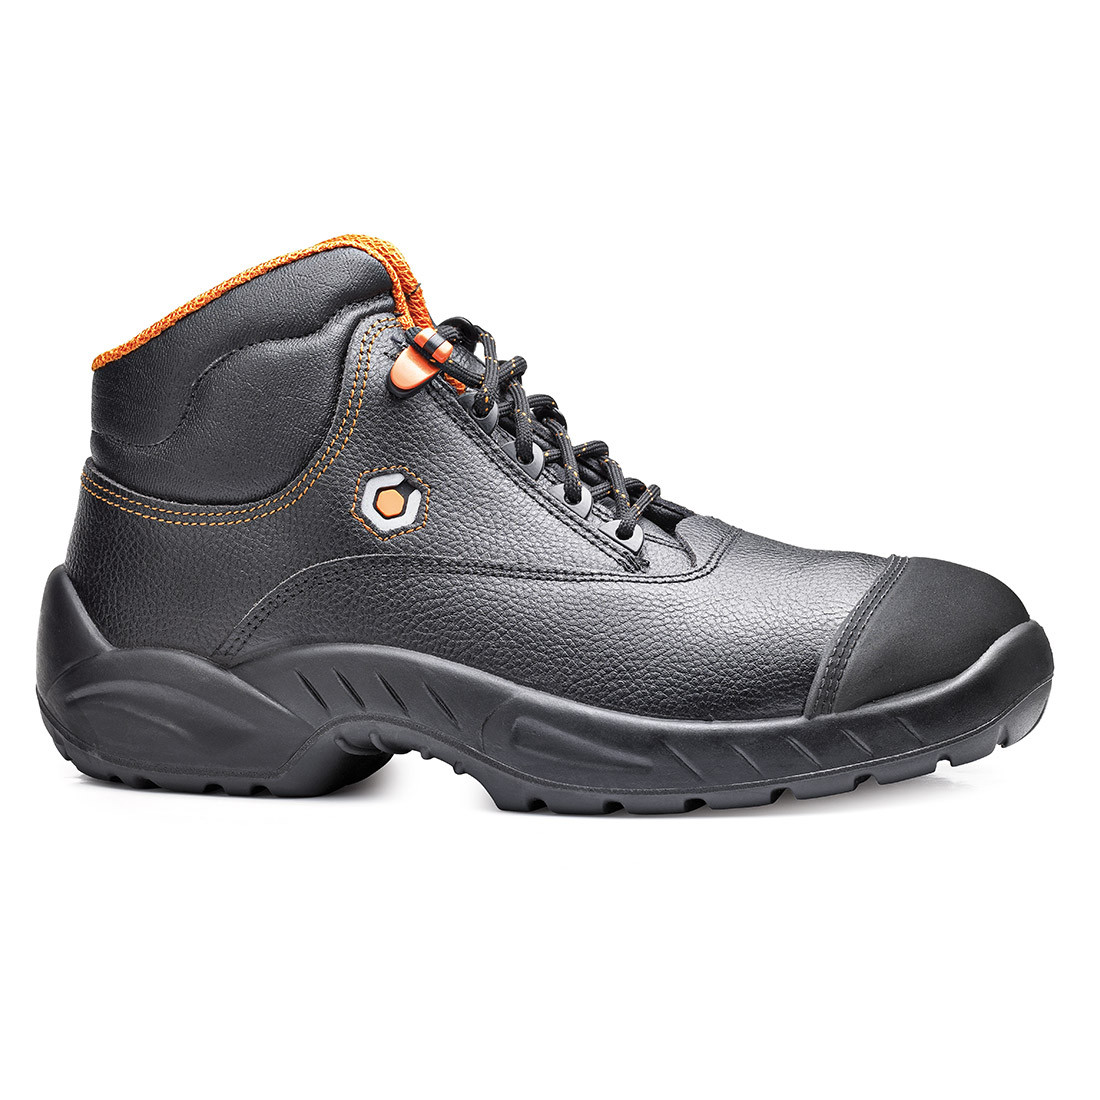 Prado Boot S3 SRC - Les chaussures de protection